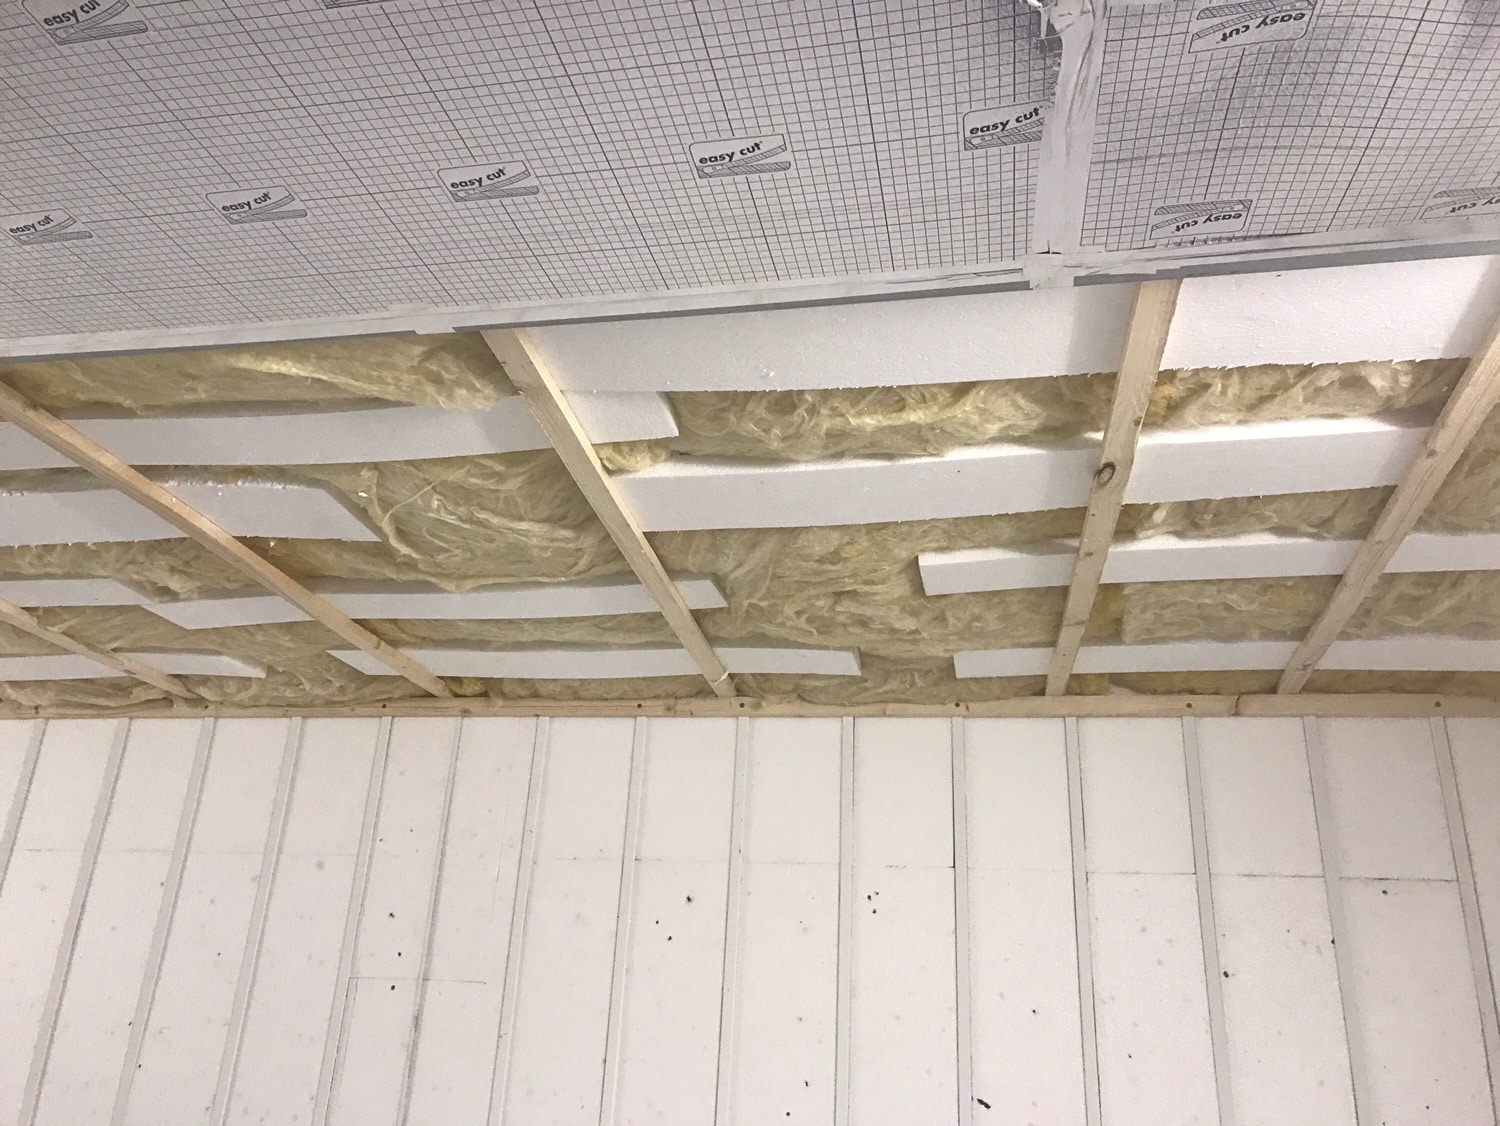 Isolierung des Daches mithilfe von Glaswolle und Polystyrol